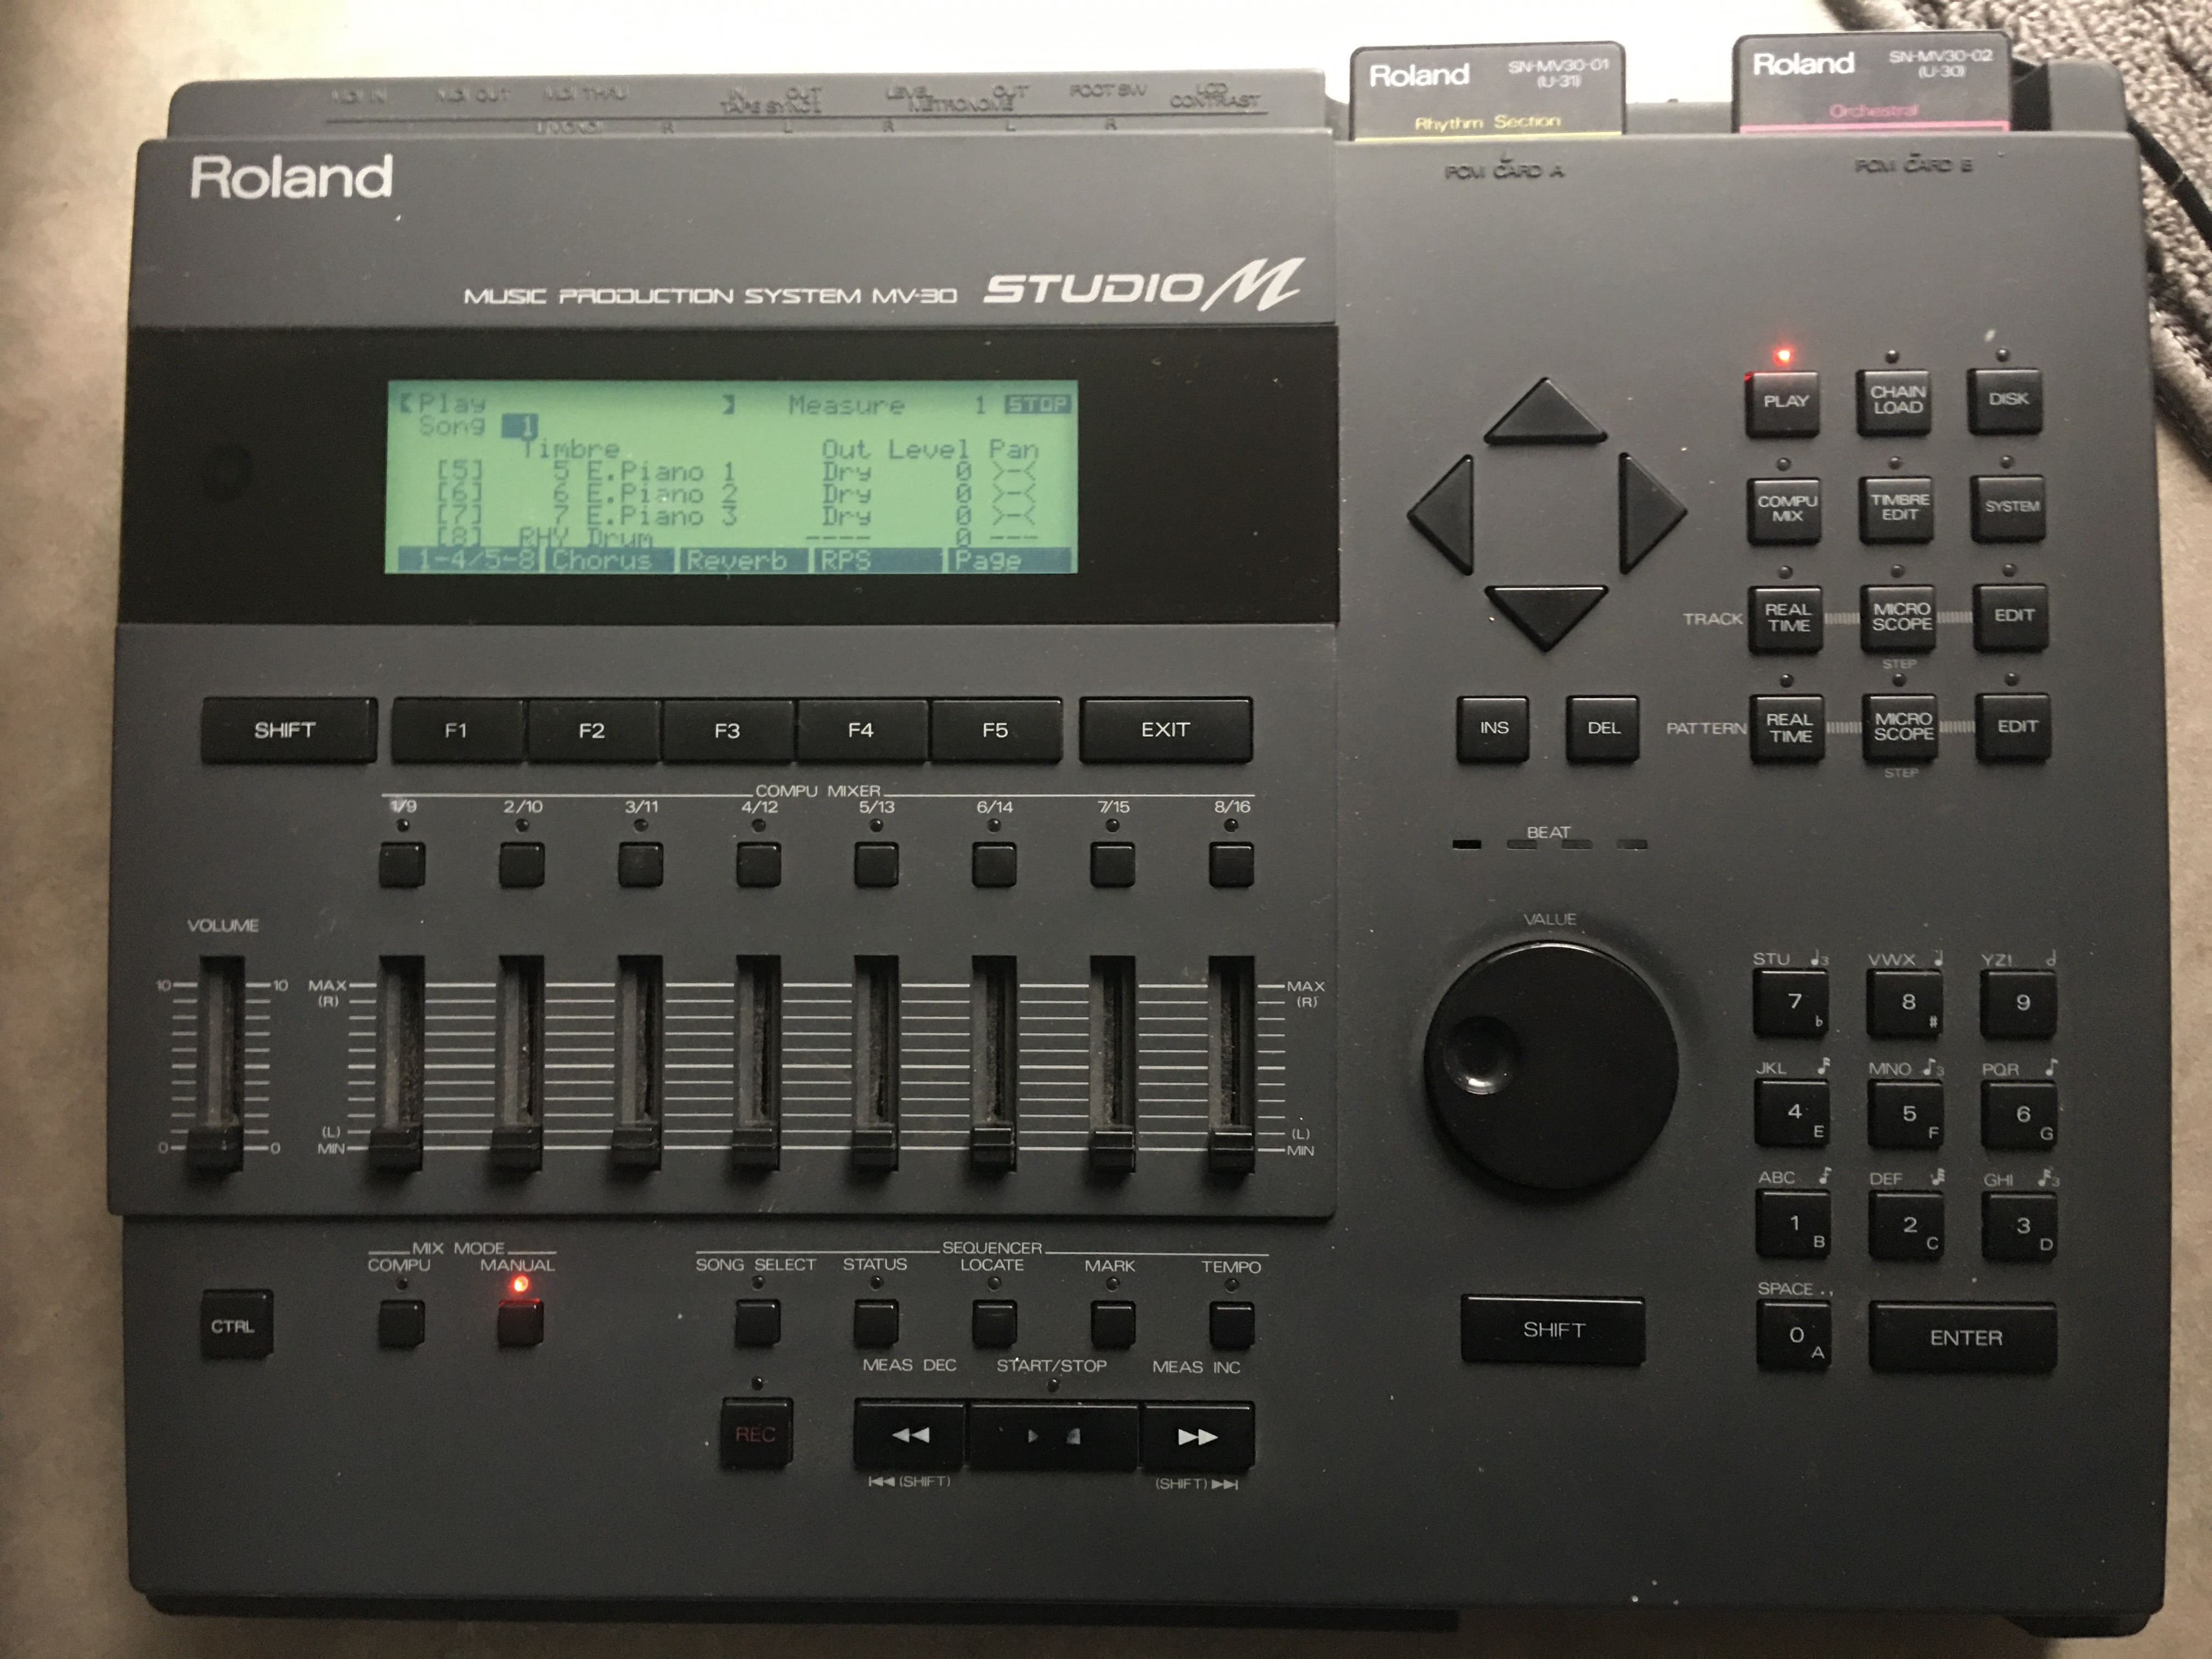 MV 30 - Roland MV 30 - Audiofanzine